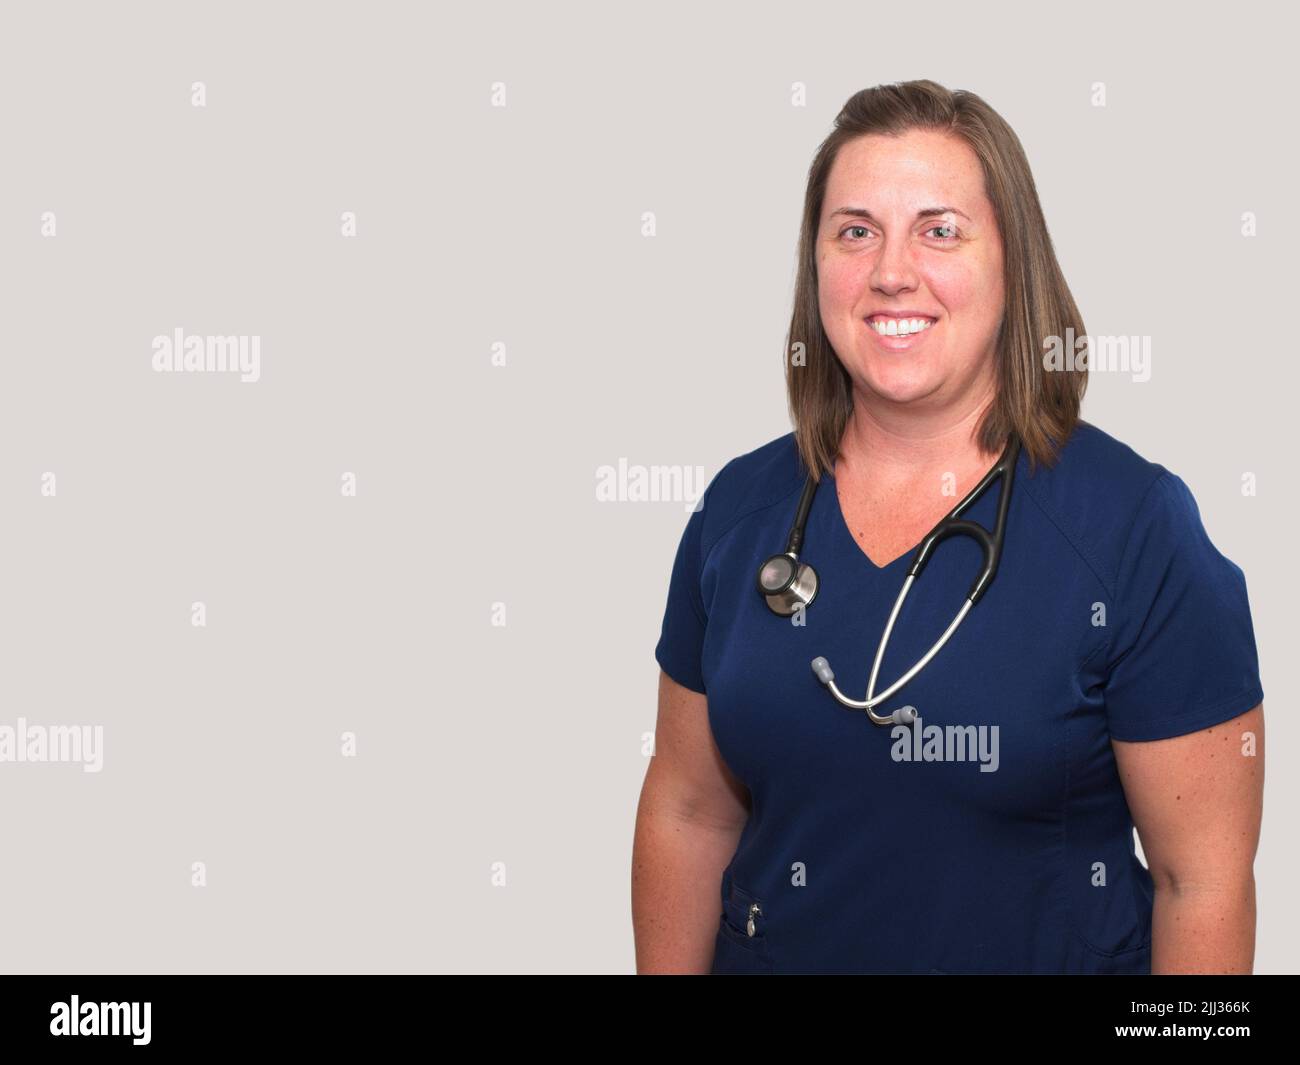 La profession médicale n'est pas facile, mais elle est certainement gratifiante pour cette infirmière praticienne souriante. Banque D'Images